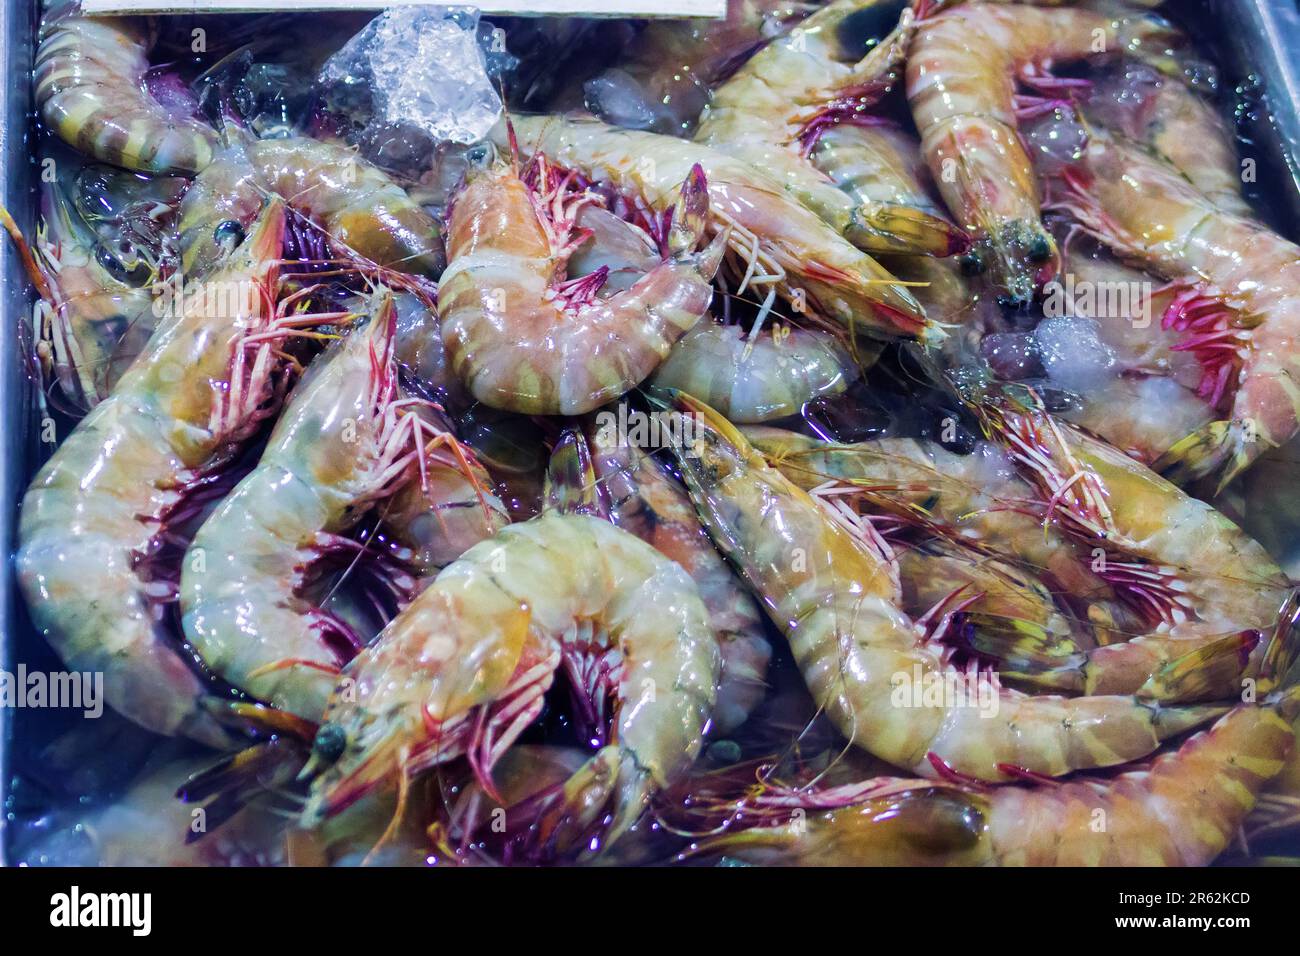 Regali del mare (gamberetti oceanici). Vari frutti di mare nei mercati del sud-est asiatico, i cosiddetti 'mercati umidi'. Thailandia Foto Stock